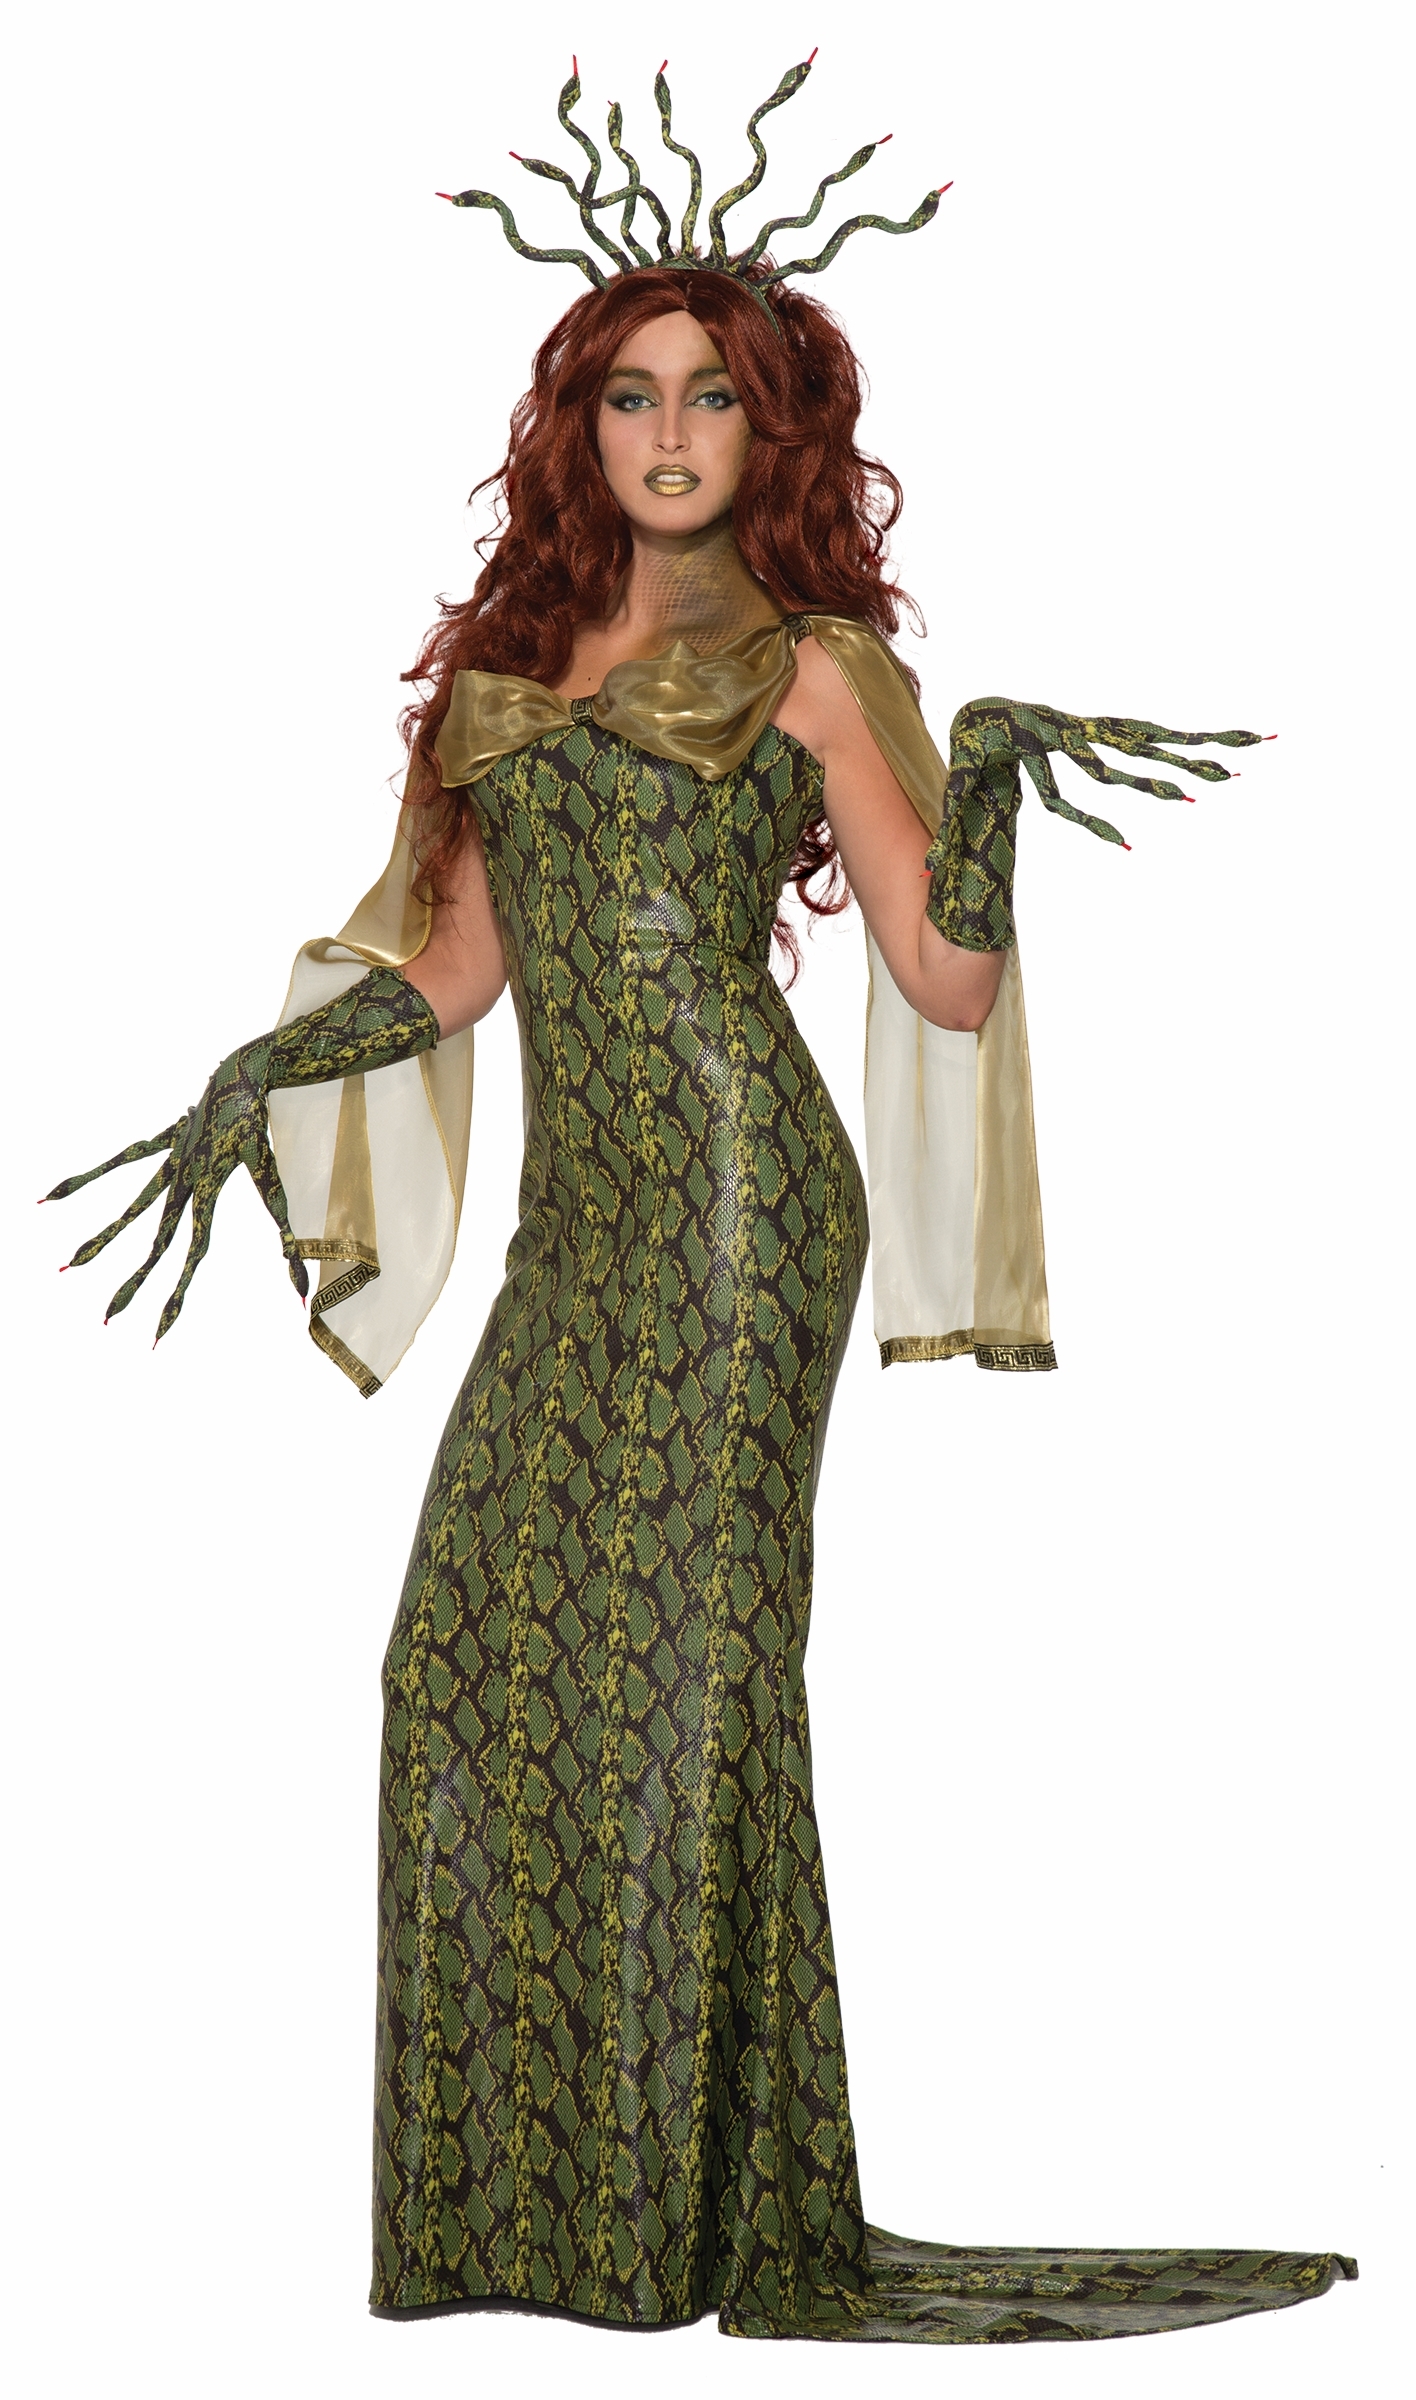 Костюм Медузы Горгоны состоит из платья, перчаток и украшения в волосы. 